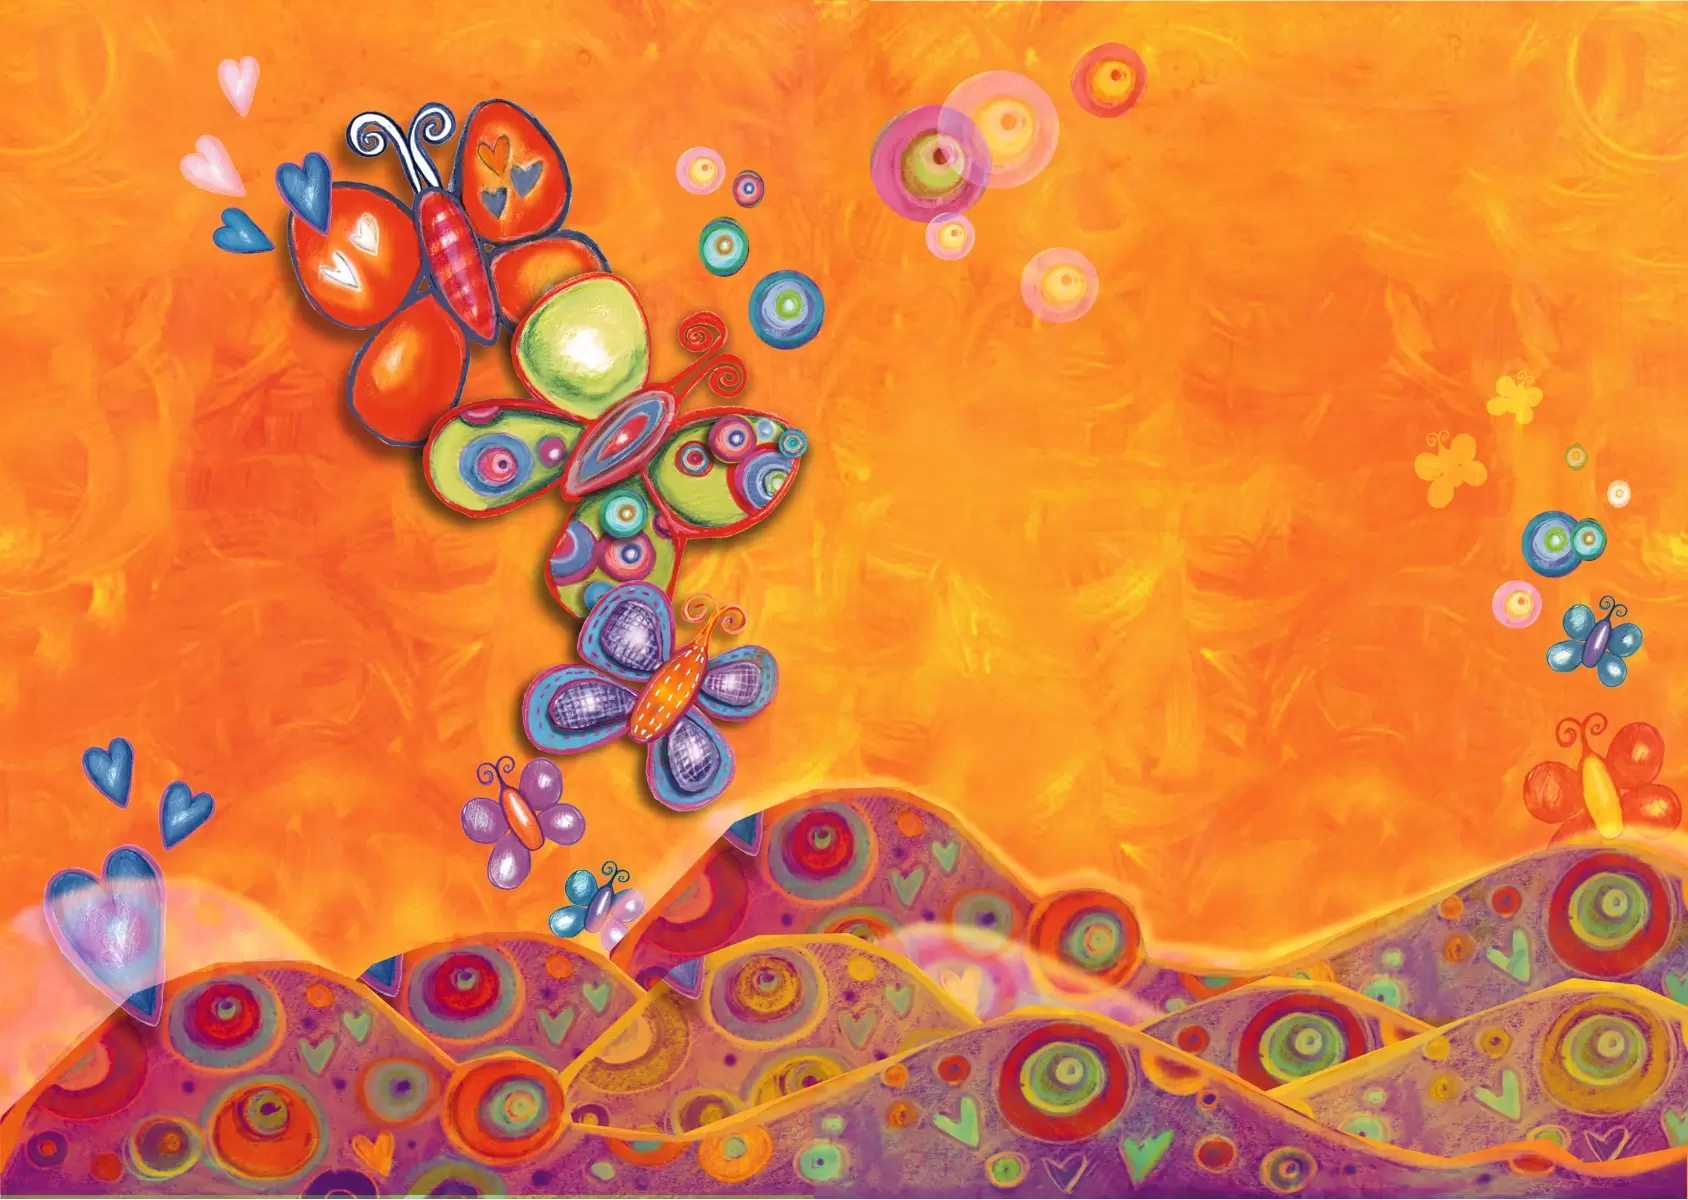 פרפרים ברקע כתום - נעמי פוקס משעול - תמונות צבעוניות לסלון מדיה מעורבת מיקס מדיה  - מק''ט: 57381